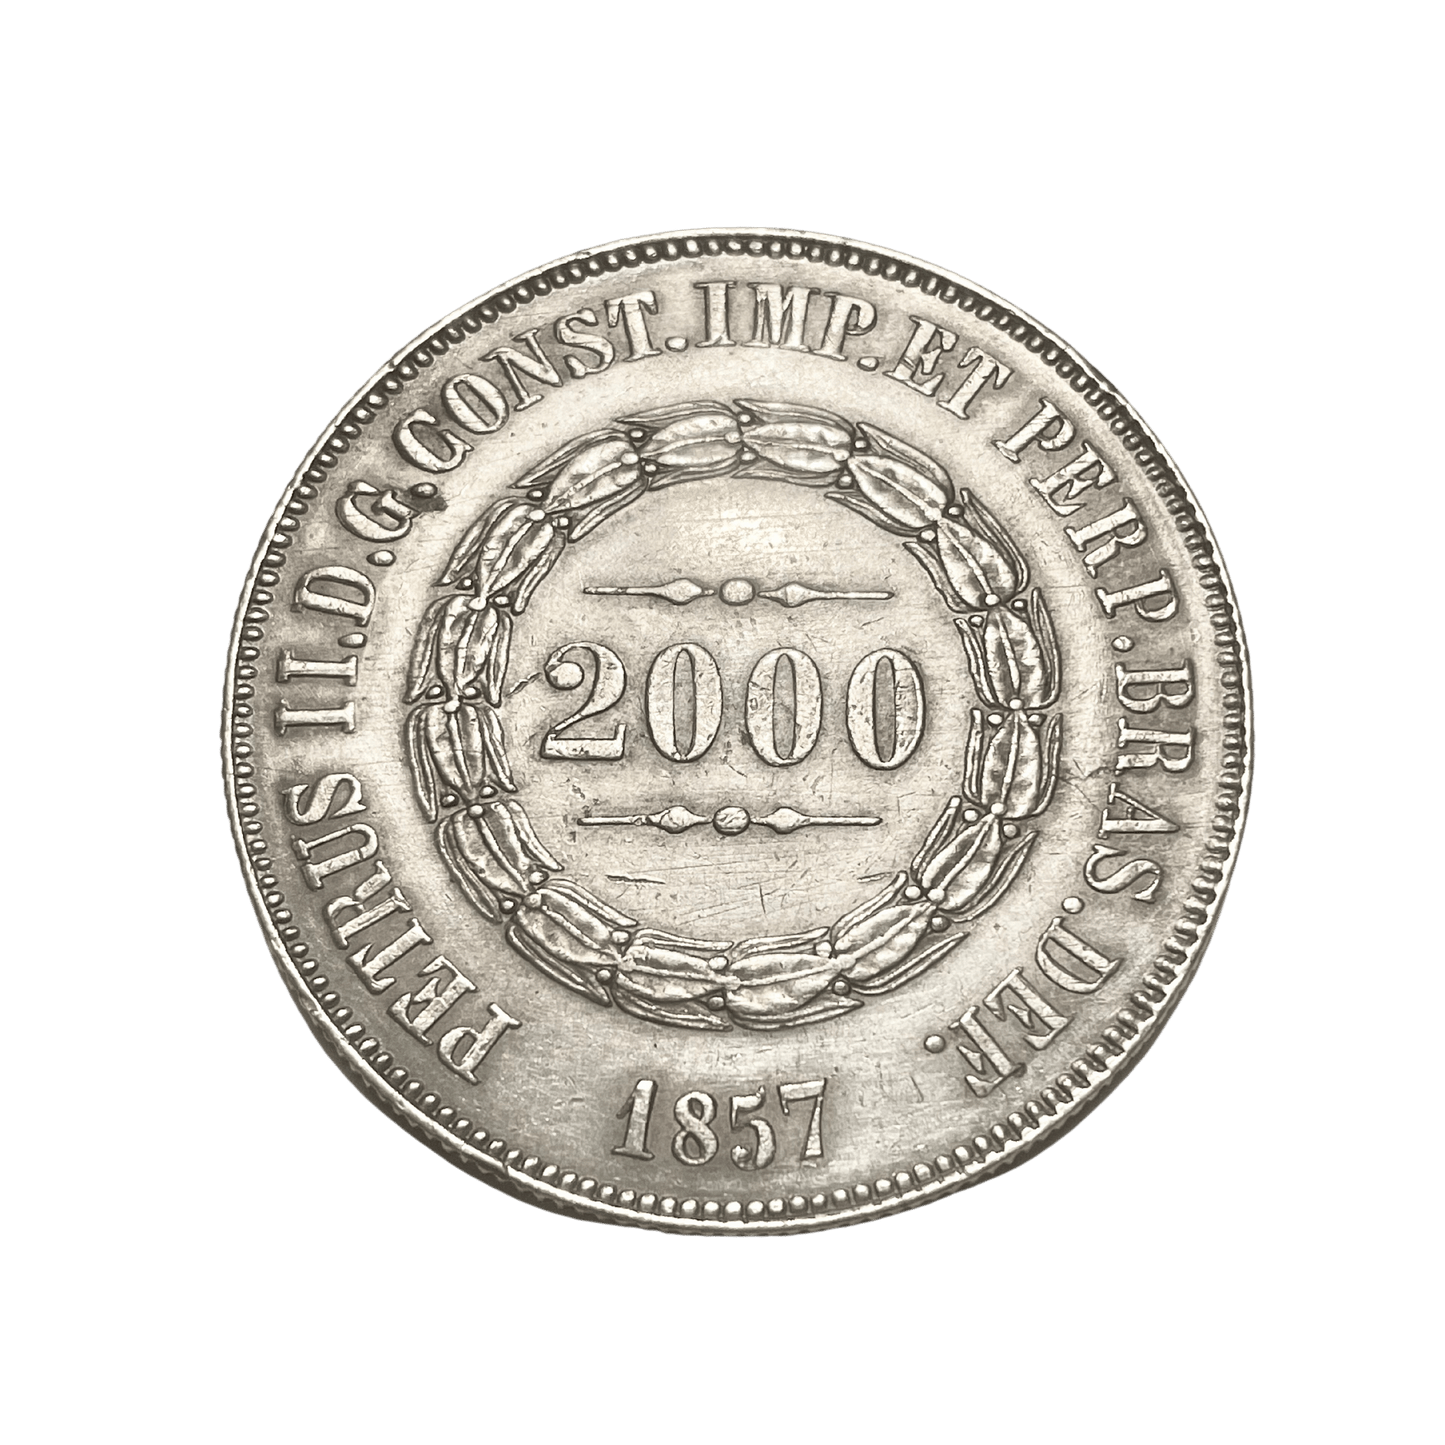 MM_ Brasil - 2000 Reis 1857